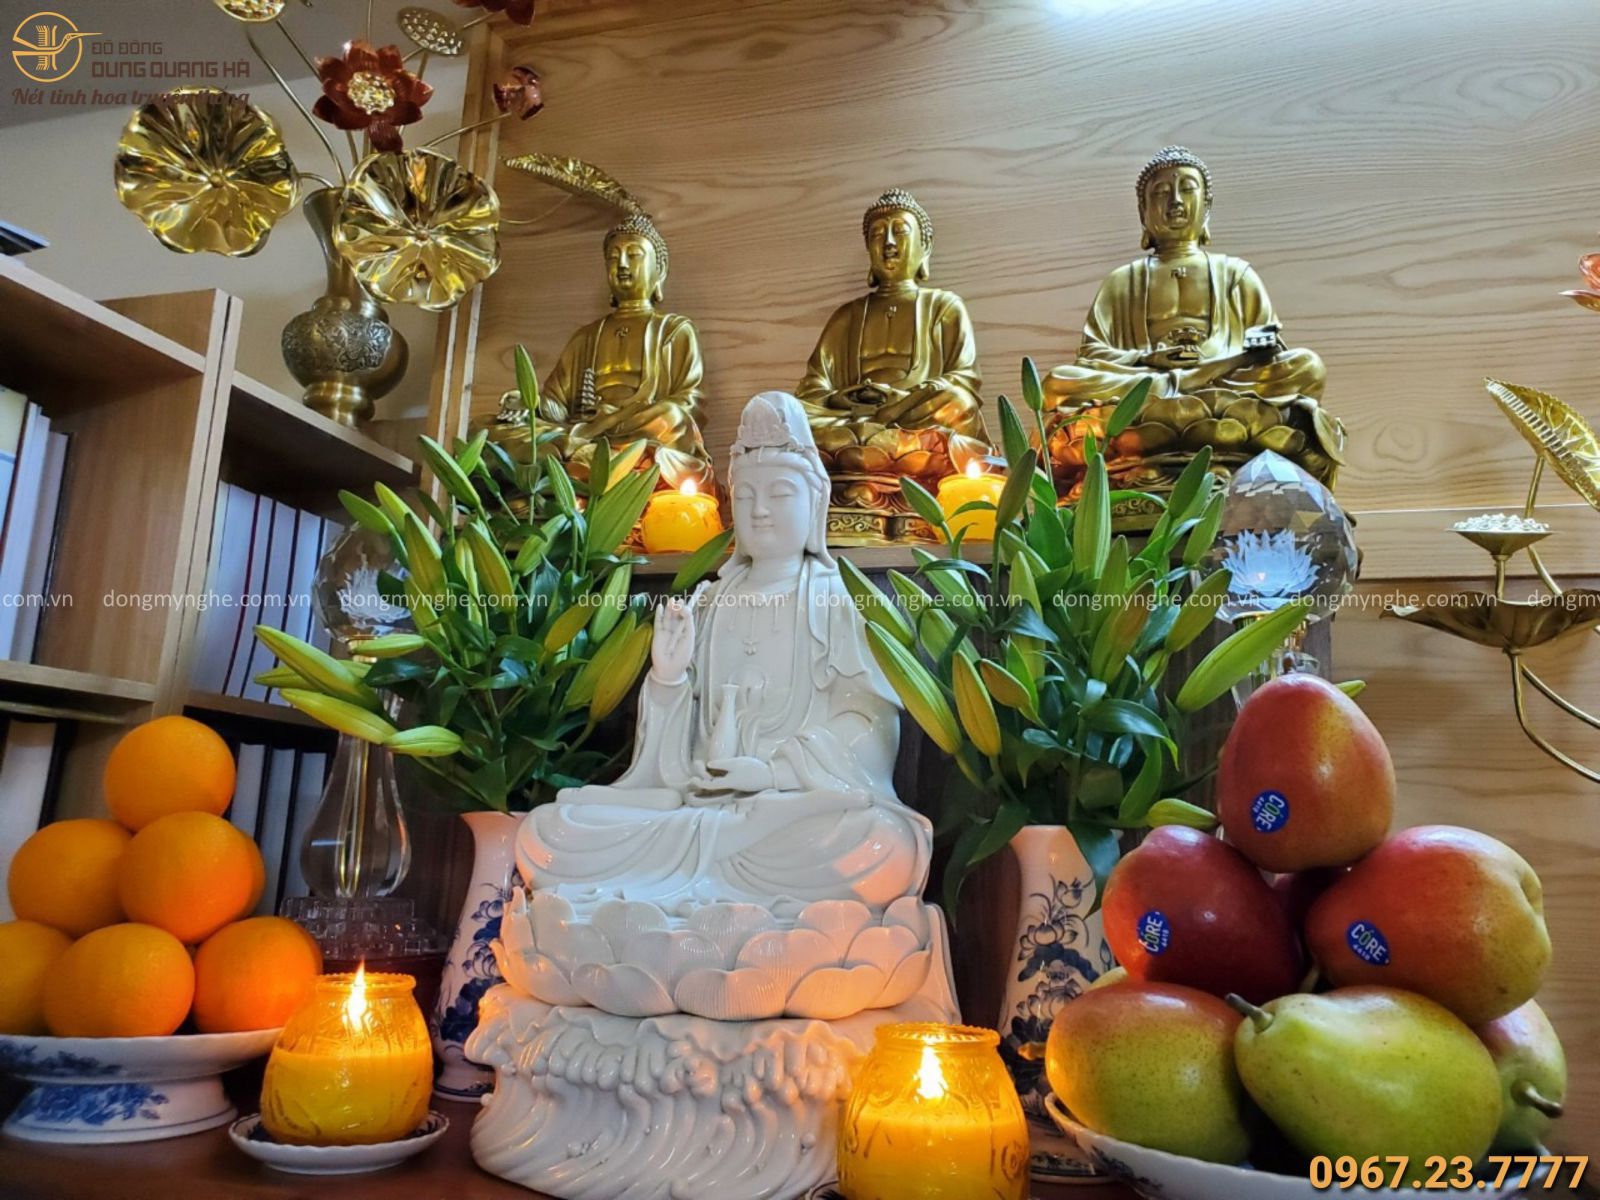 Sắp Xếp Tượng Phật: Thể hiện tình yêu của người Việt đối với Phật giáo cũng như niềm tự hào về bản sắc dân tộc, những bức tượng Phật được sắp xếp chính là điểm nhấn cho không gian sống. Từ những bức tượng mini đặt trên bàn học đến những bức tượng lớn trang trí trên sân vườn, tất cả đều là những điểm nhấn nổi bật.